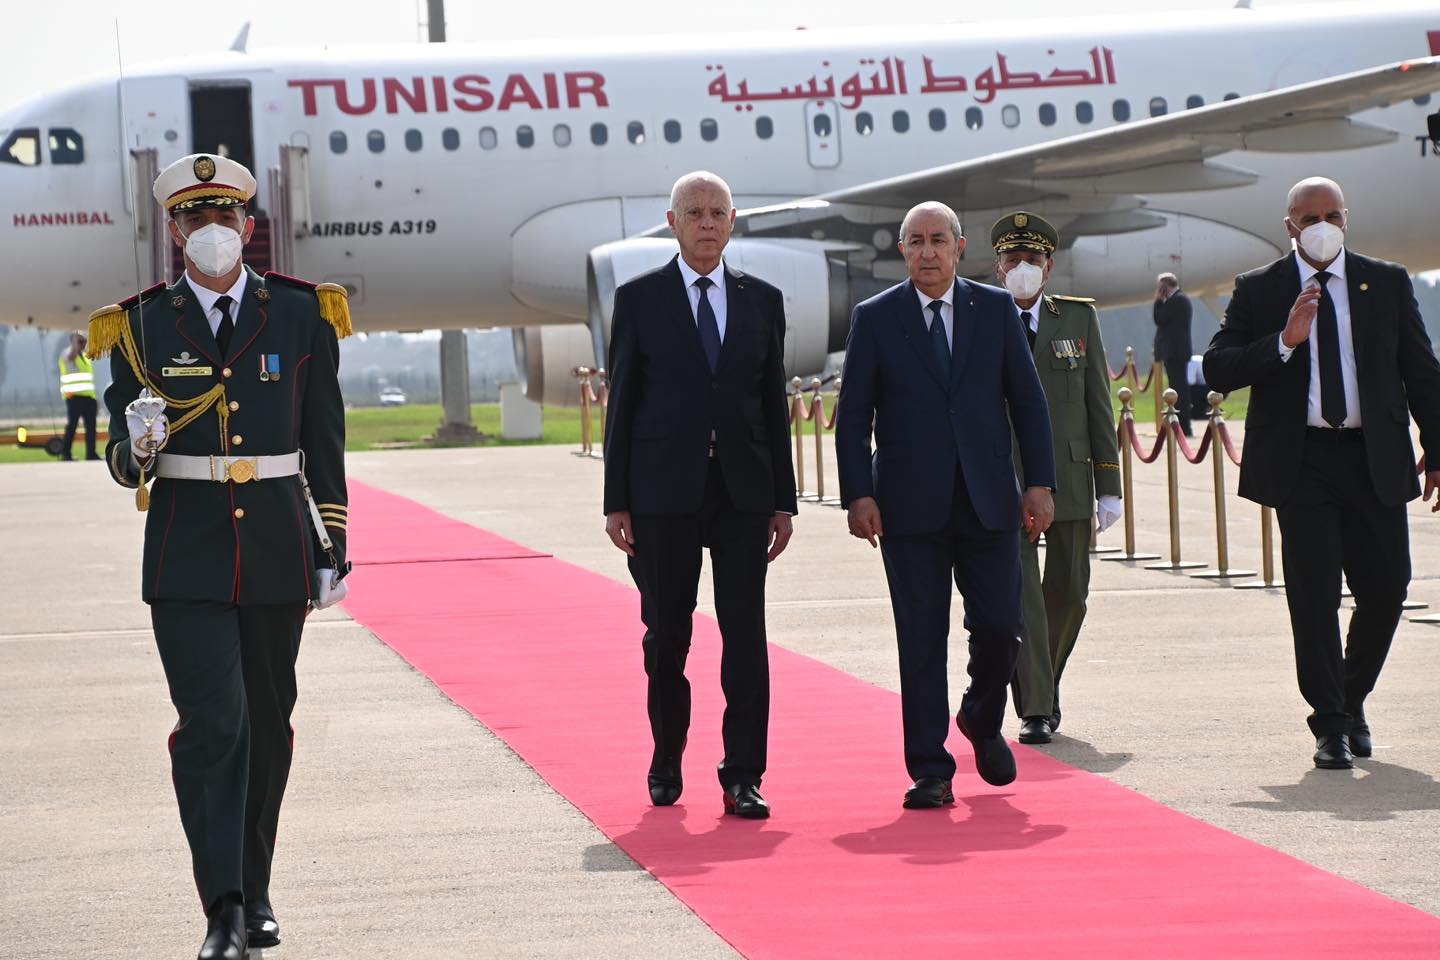 Sommet arabe: arrivée à Alger du président tunisien